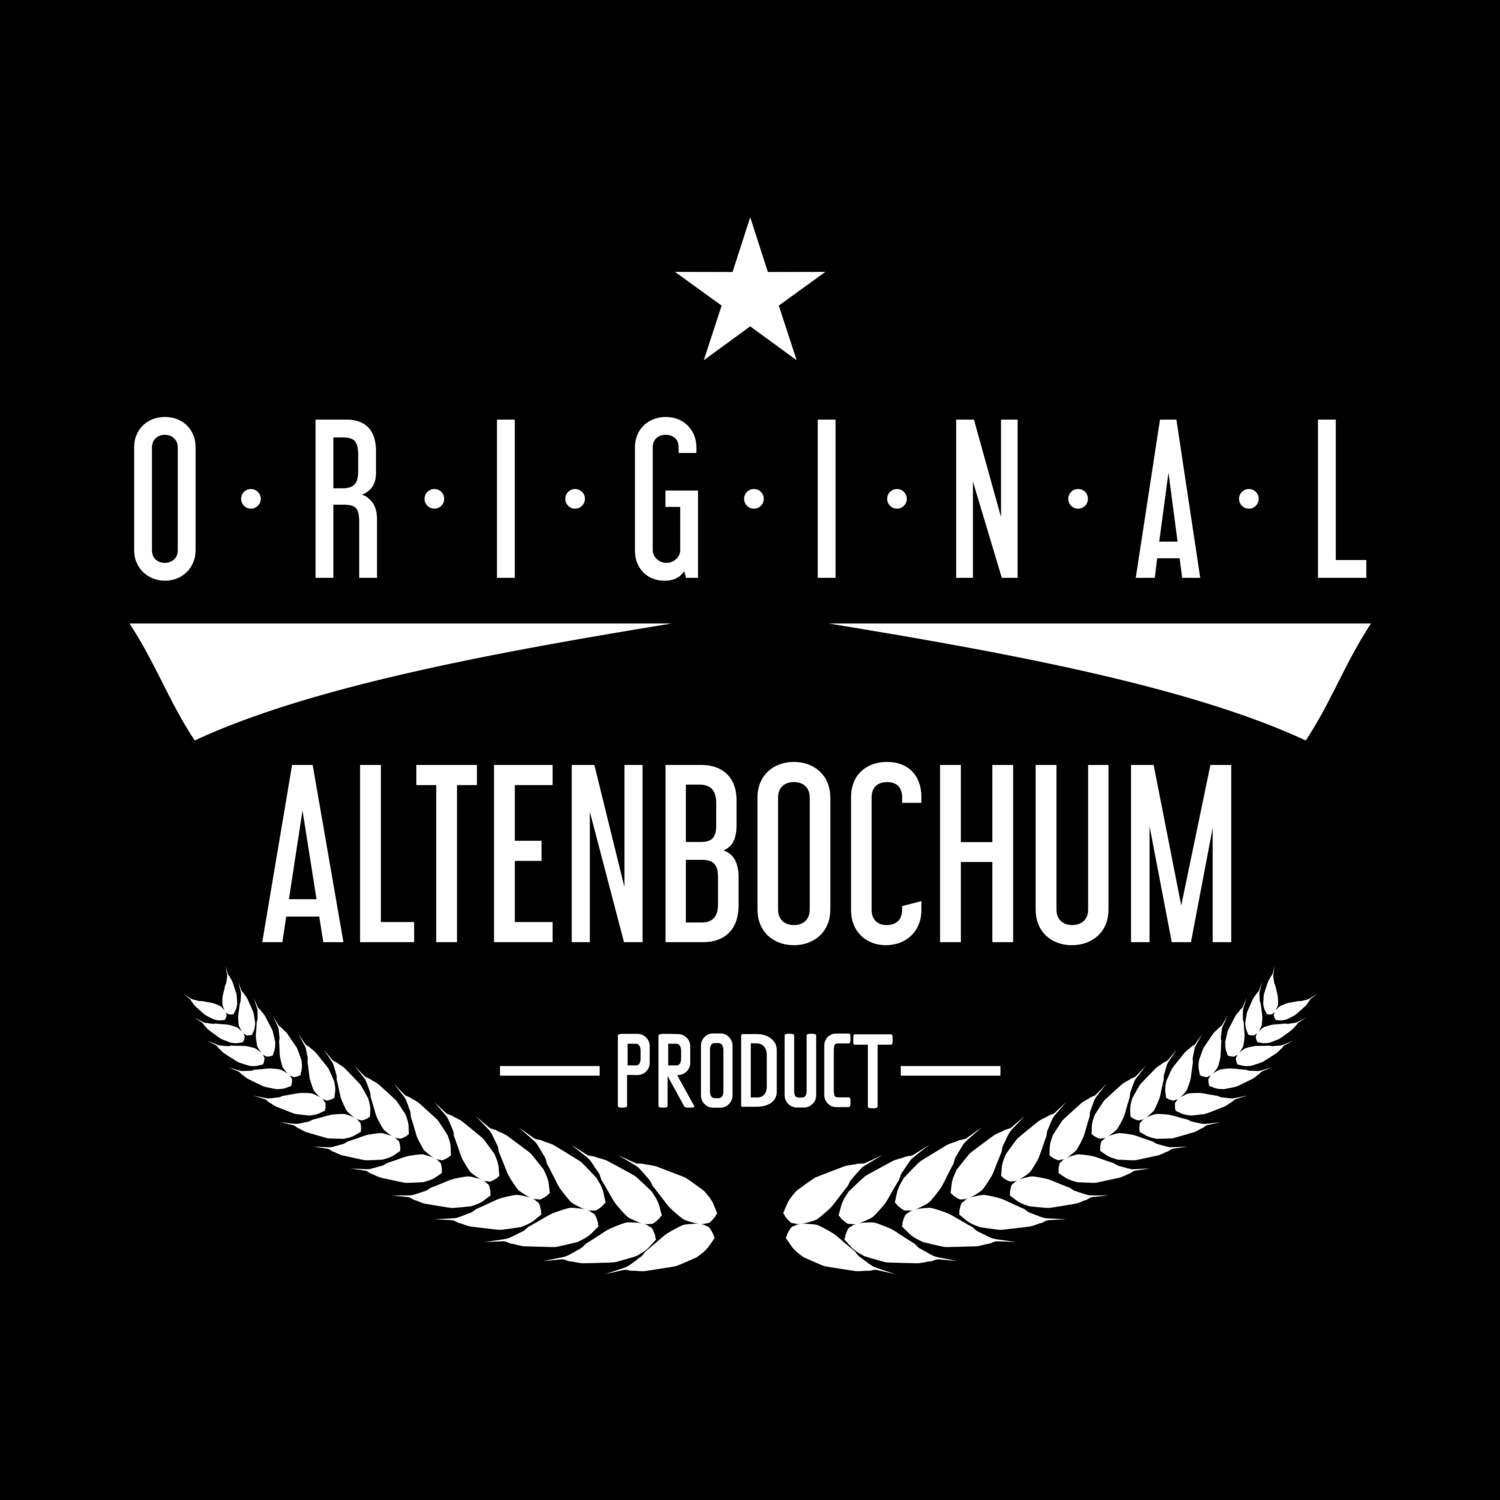 Altenbochum T-Shirt »Original Product«